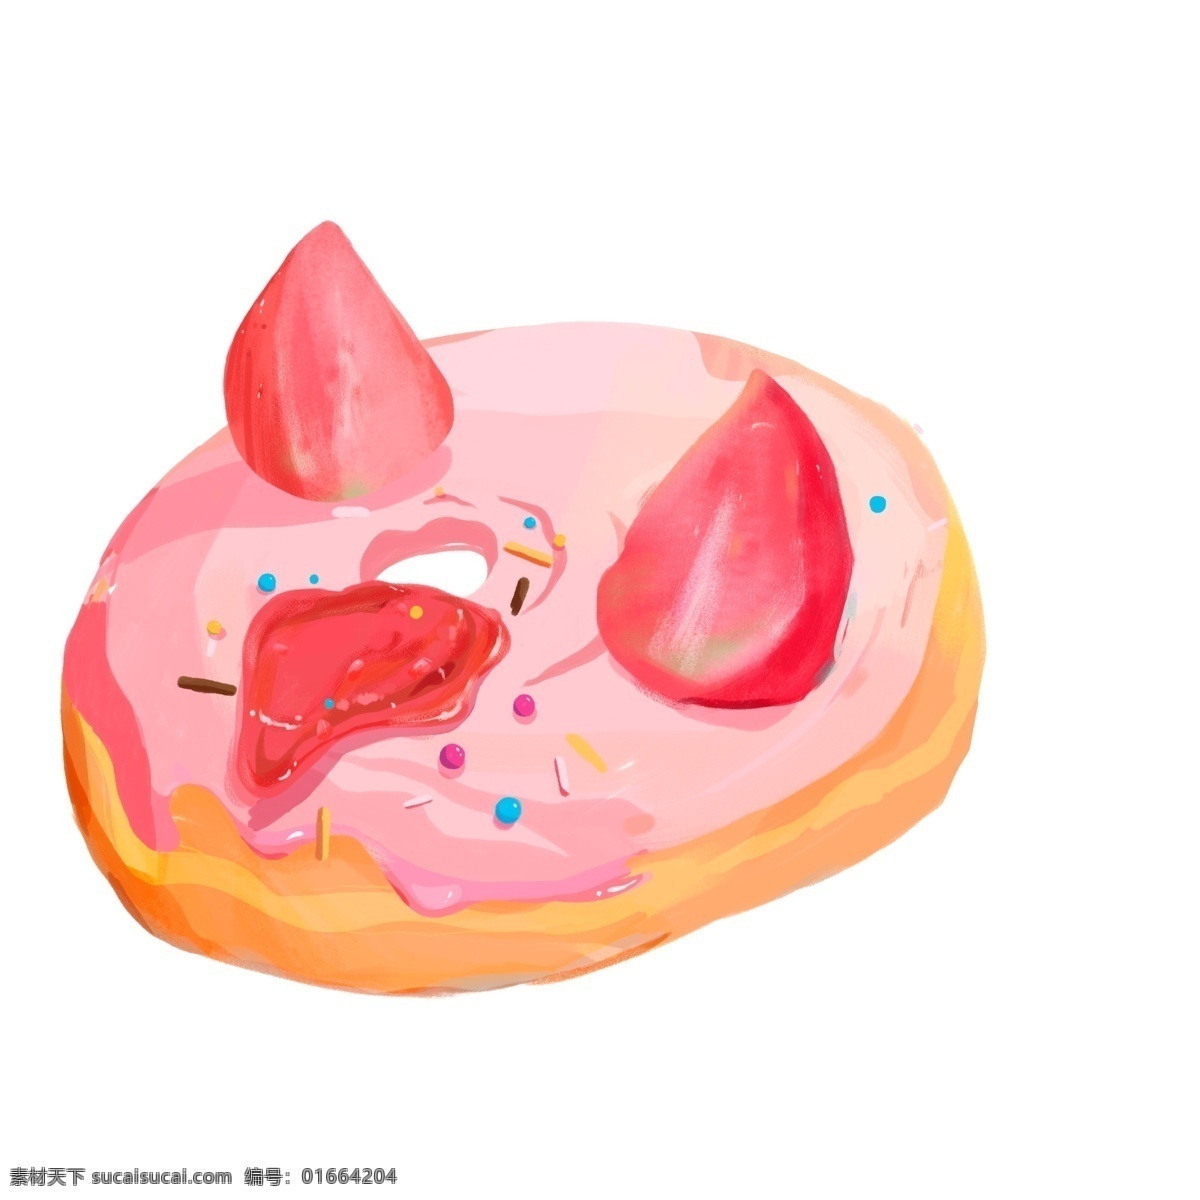 粉色 甜美 甜甜 圈 美食 元素 卡通 甜食 甜甜圈 甜点 插画